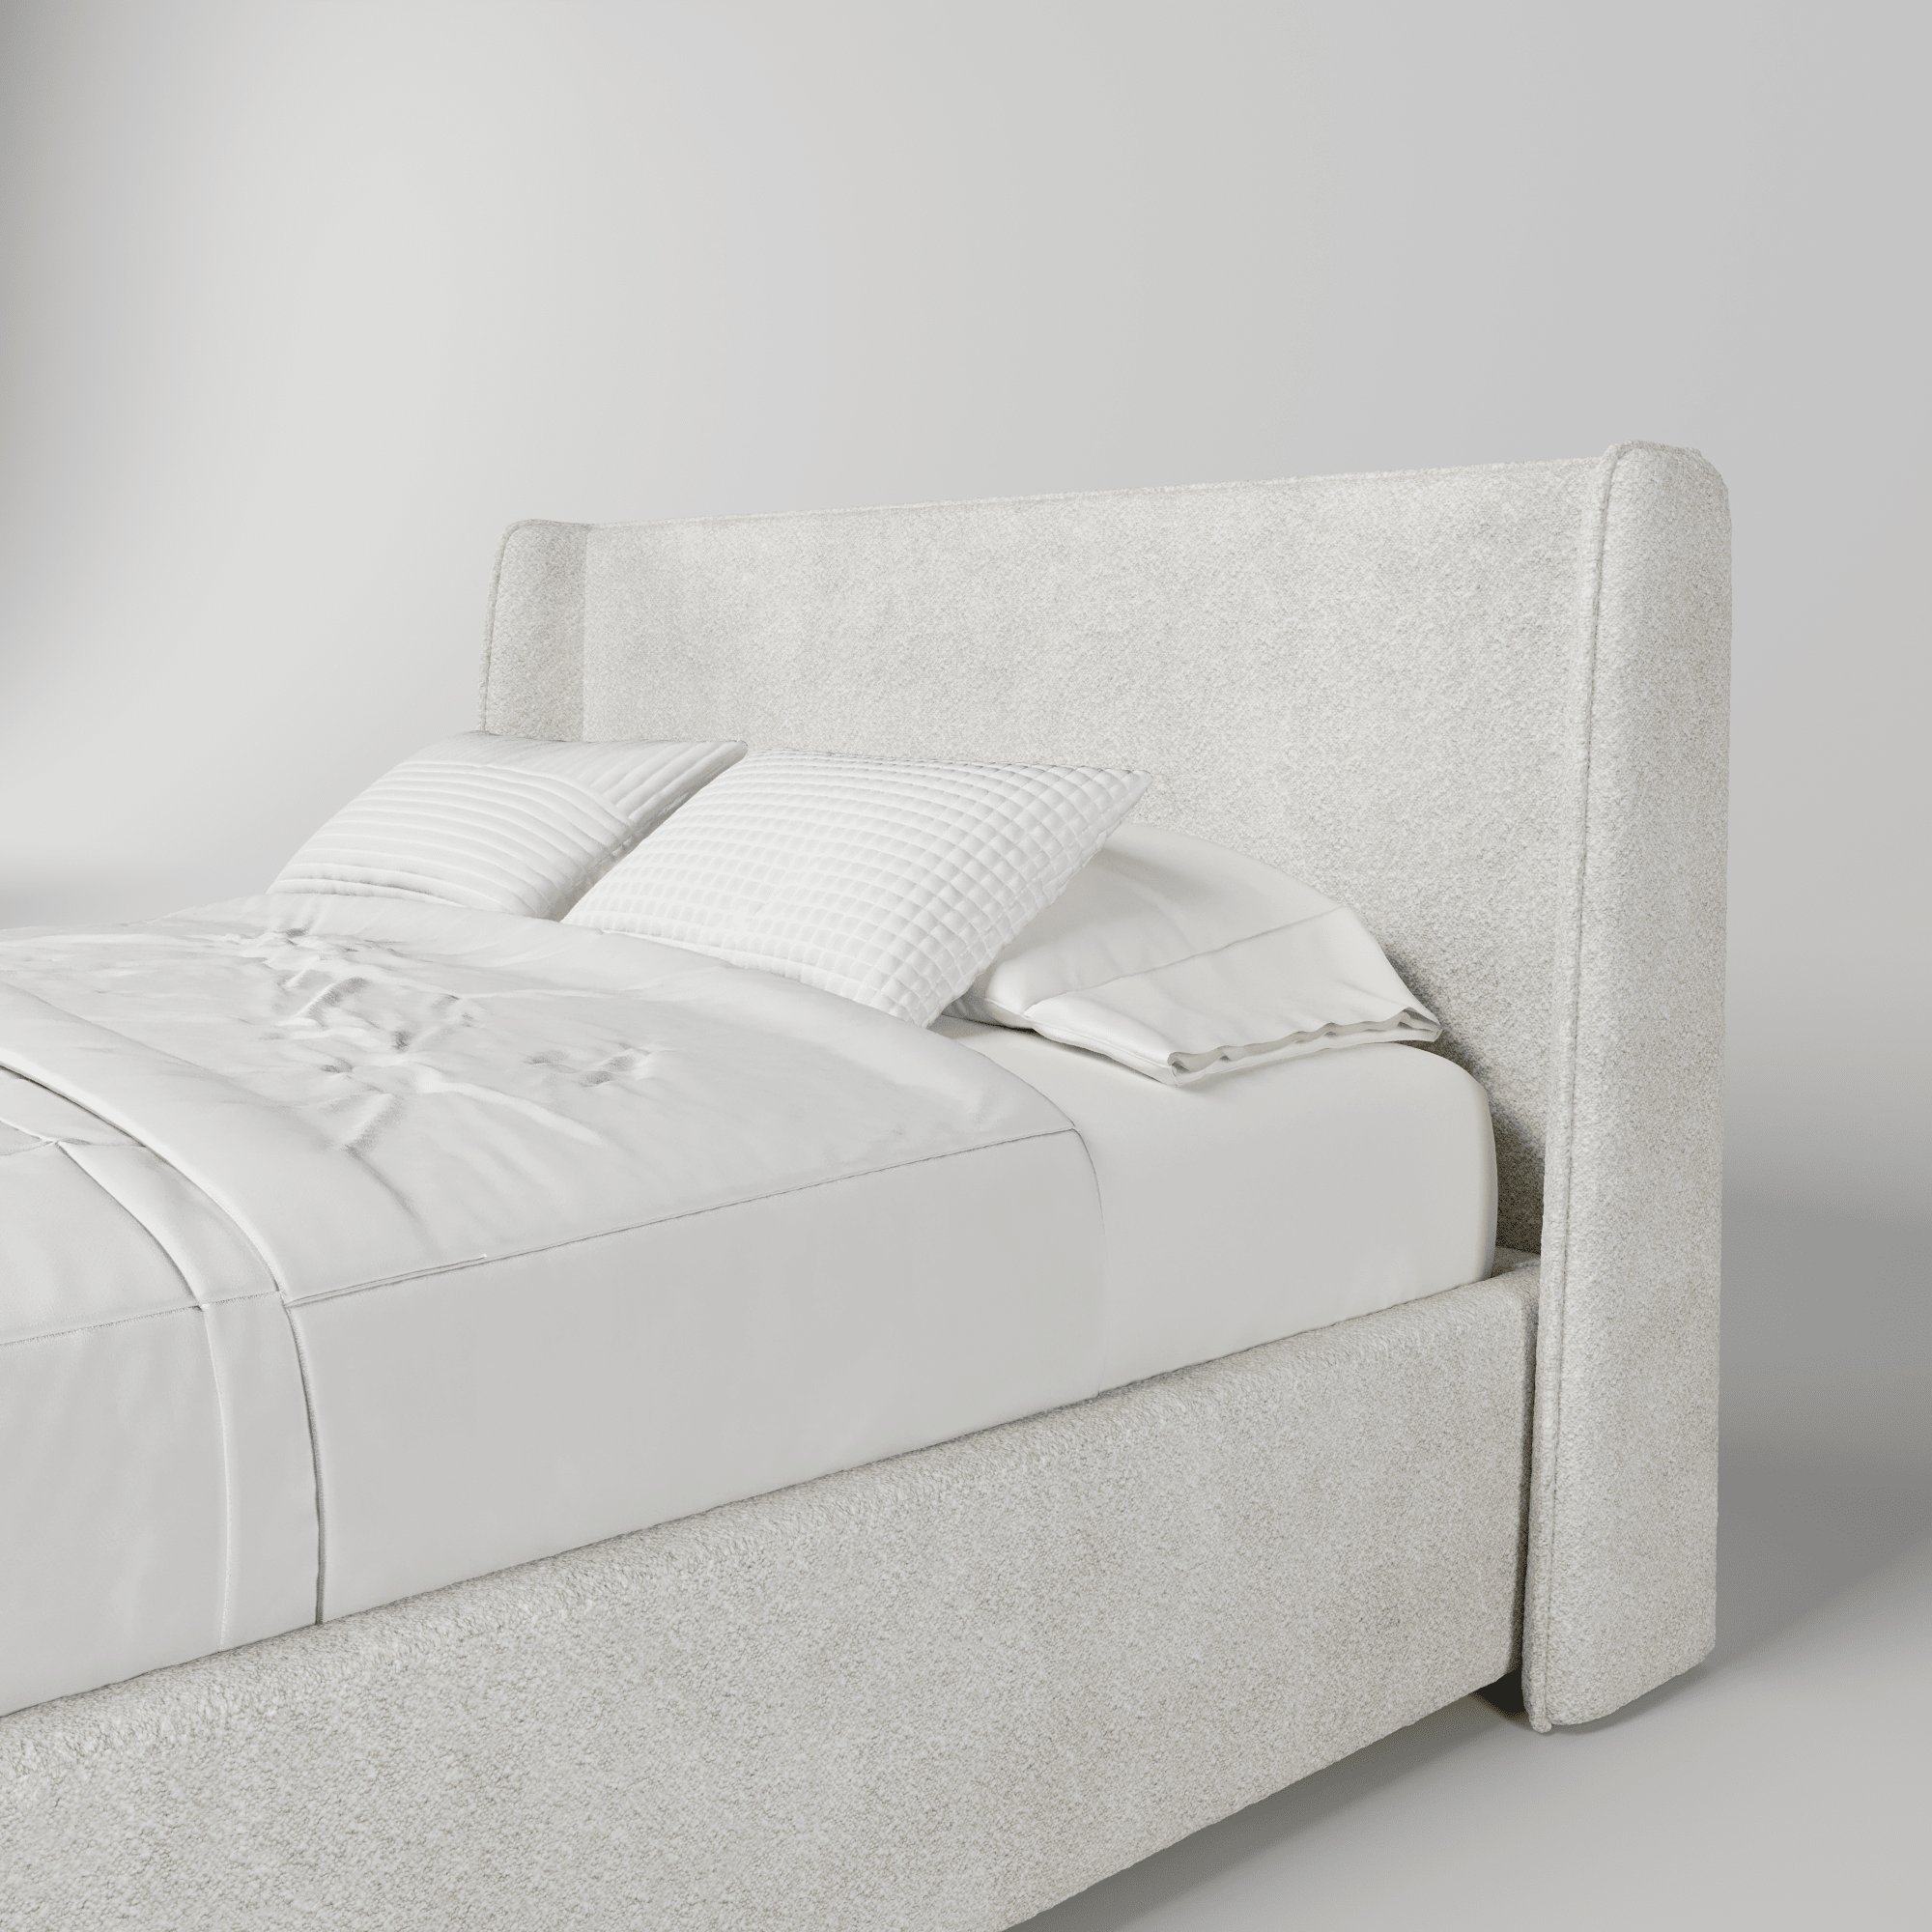 Кровать двуспальная мягкая Lora с подъемным механизмом, 90x200